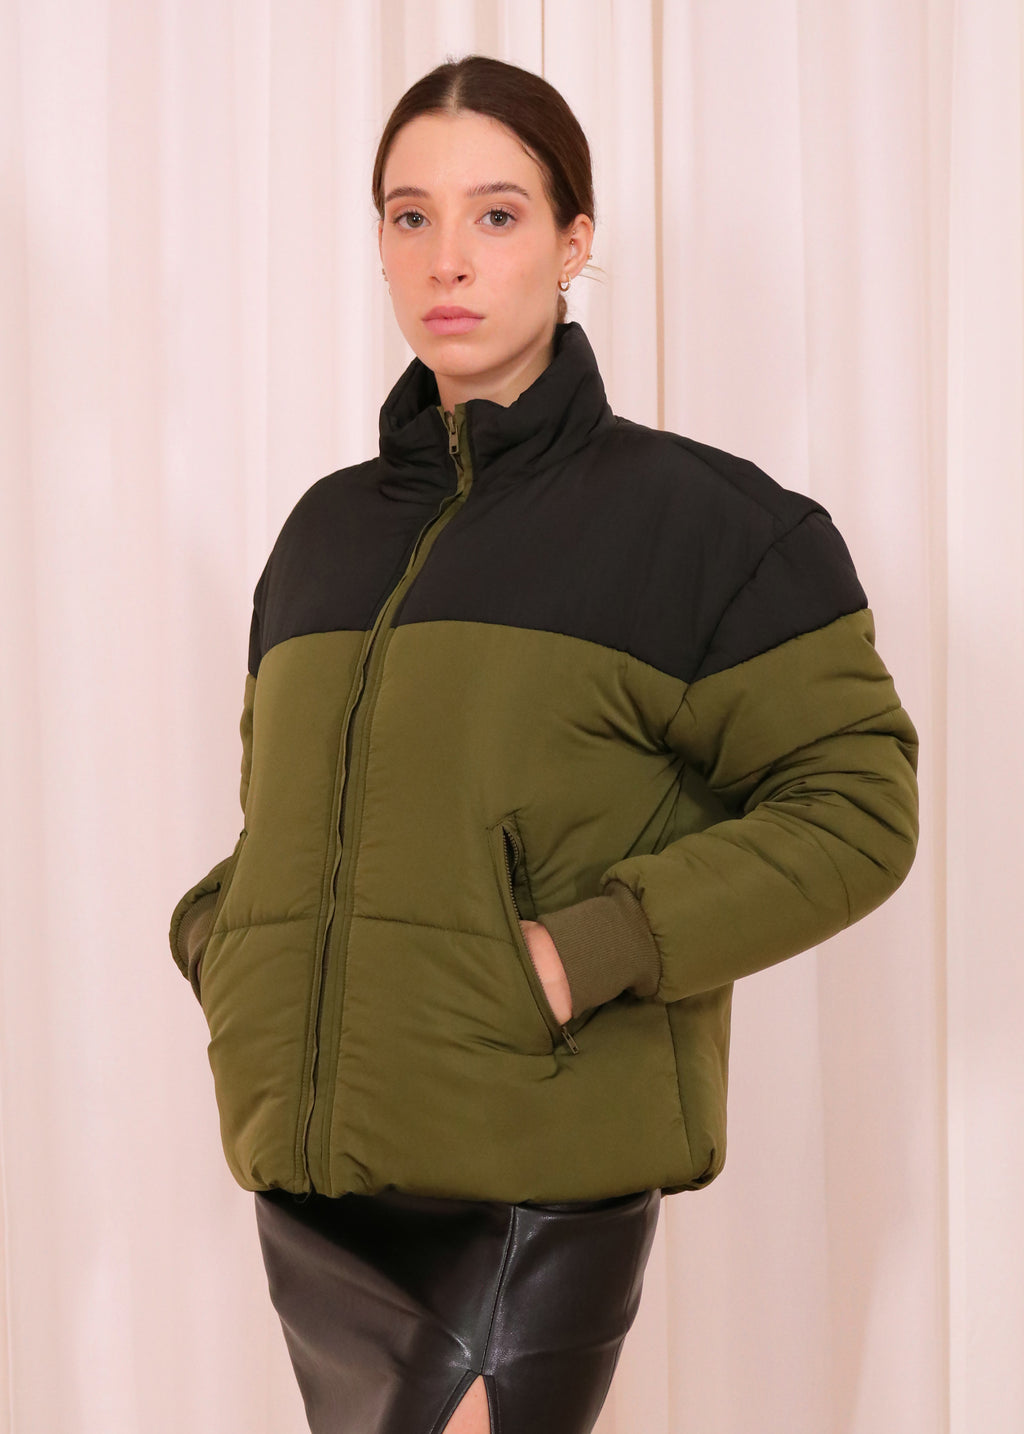 Women’s Ultra Light Stand Up Collar Puffer Jacket - Khaki & Black Colourblock